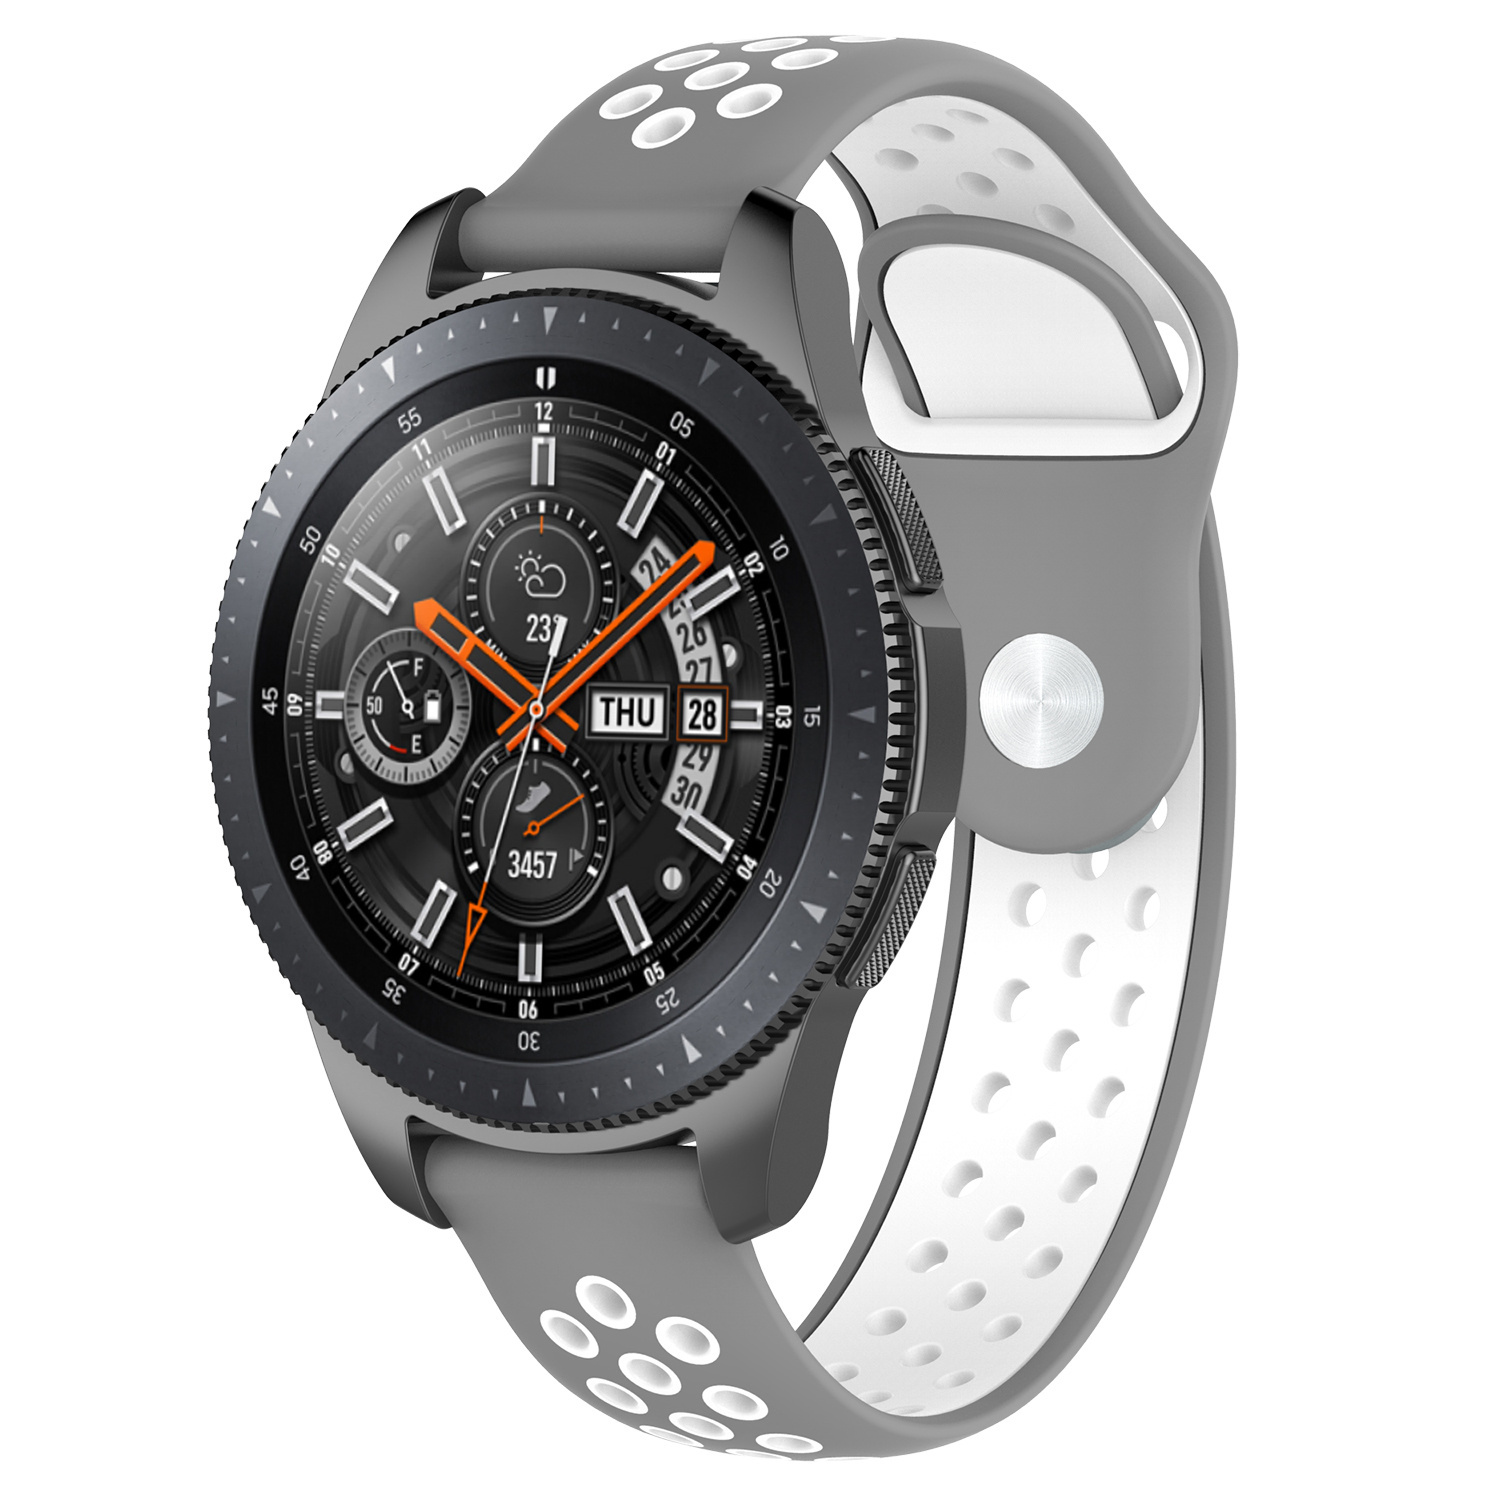 Samsung Galaxy Watch dupla sport szíj - szürke fehér